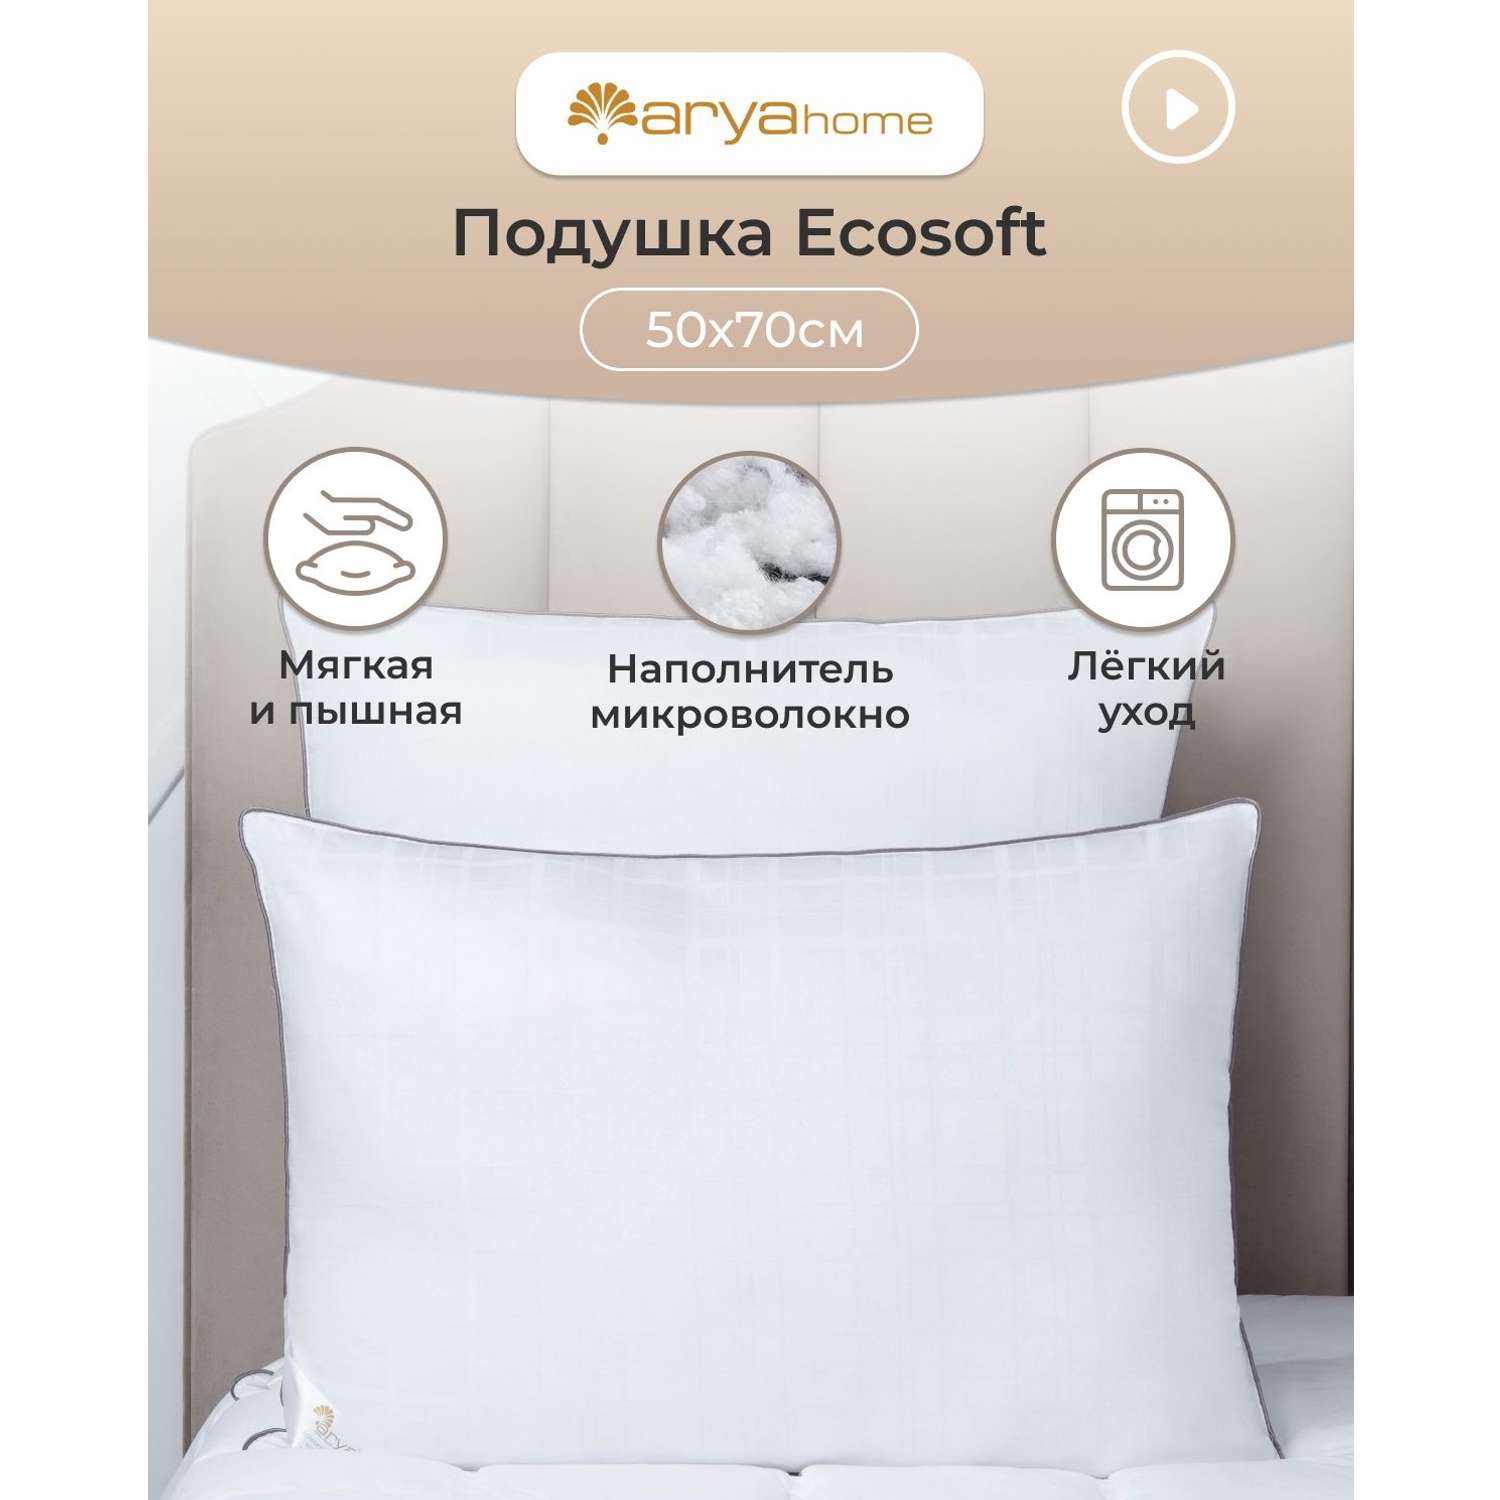 Подушка Arya Home Collection 50x70 см для сна хлопок Ecosoft - фото 2